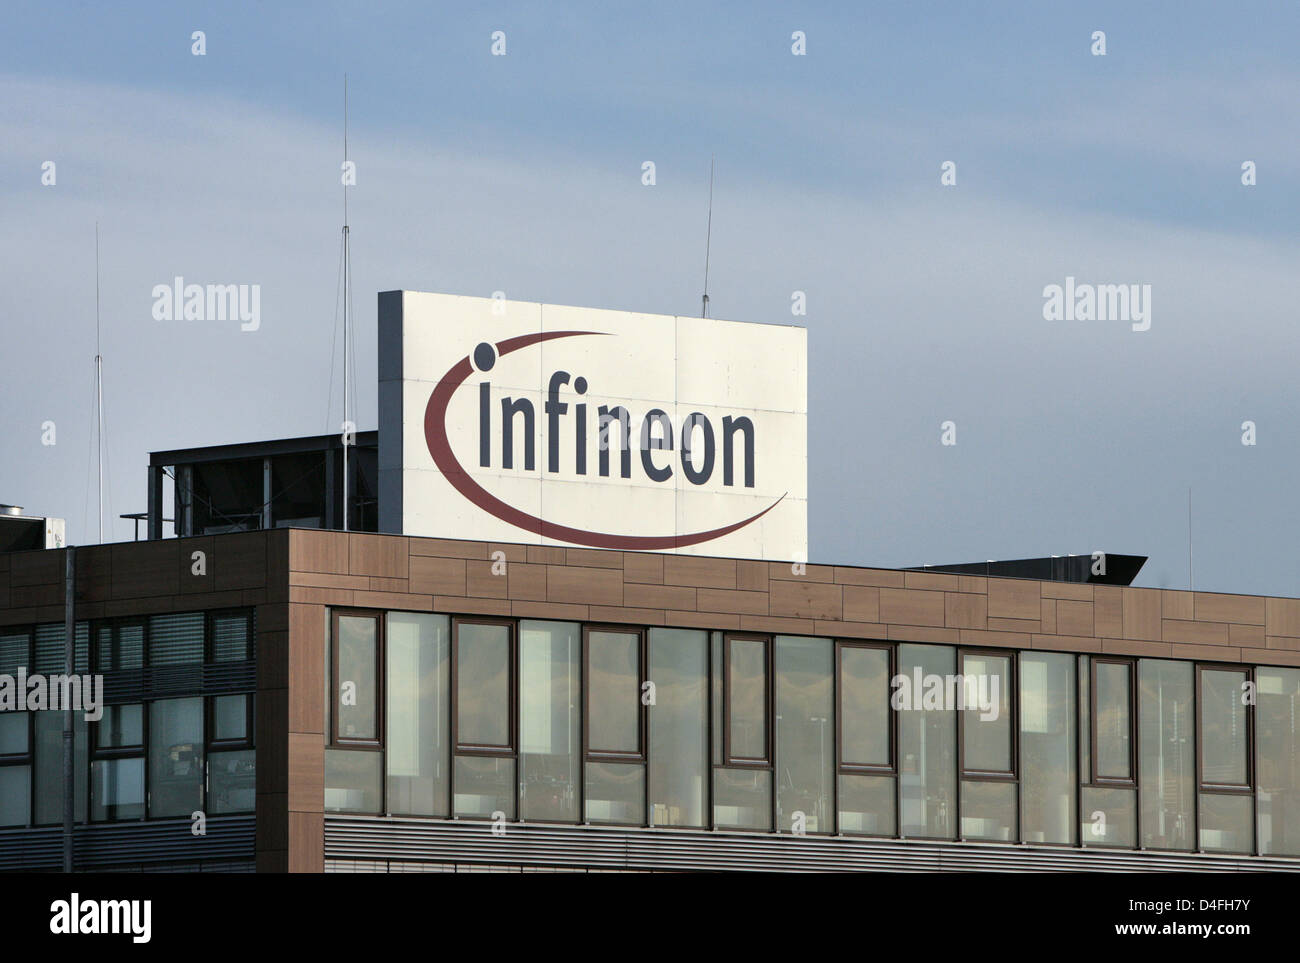 Ein "Infineon" Schild gesehen auf das Hauptquartier der deutschen Tech Unternehmen Infineon Technologies AG in Neubiberg bei München, 6. August 2008. Chip-Hersteller "Infineon" wurde 1999 als eine Abspaltung von Siemens Halbleiter-Branche gegründet. Seine Heaquarters sind "Campeon", eine Mischung zwischen "Campus" und "Infineon" synchronisiert. Foto: Andreas Gebert Stockfoto